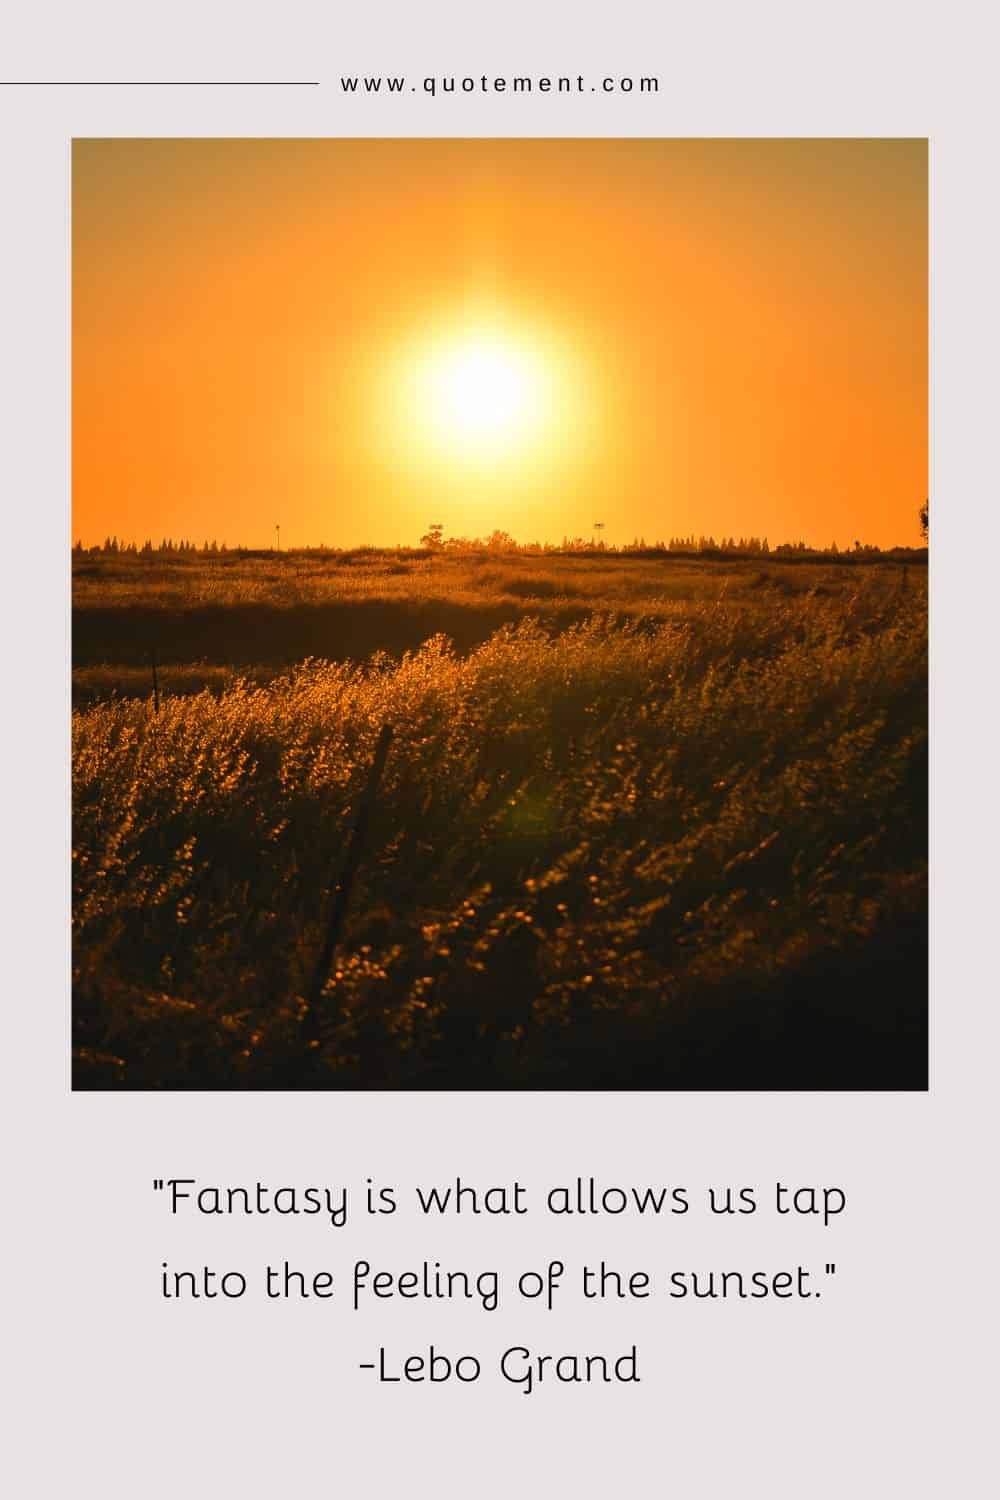 La fantasía es lo que nos permite aprovechar el sentimiento de la puesta de sol.